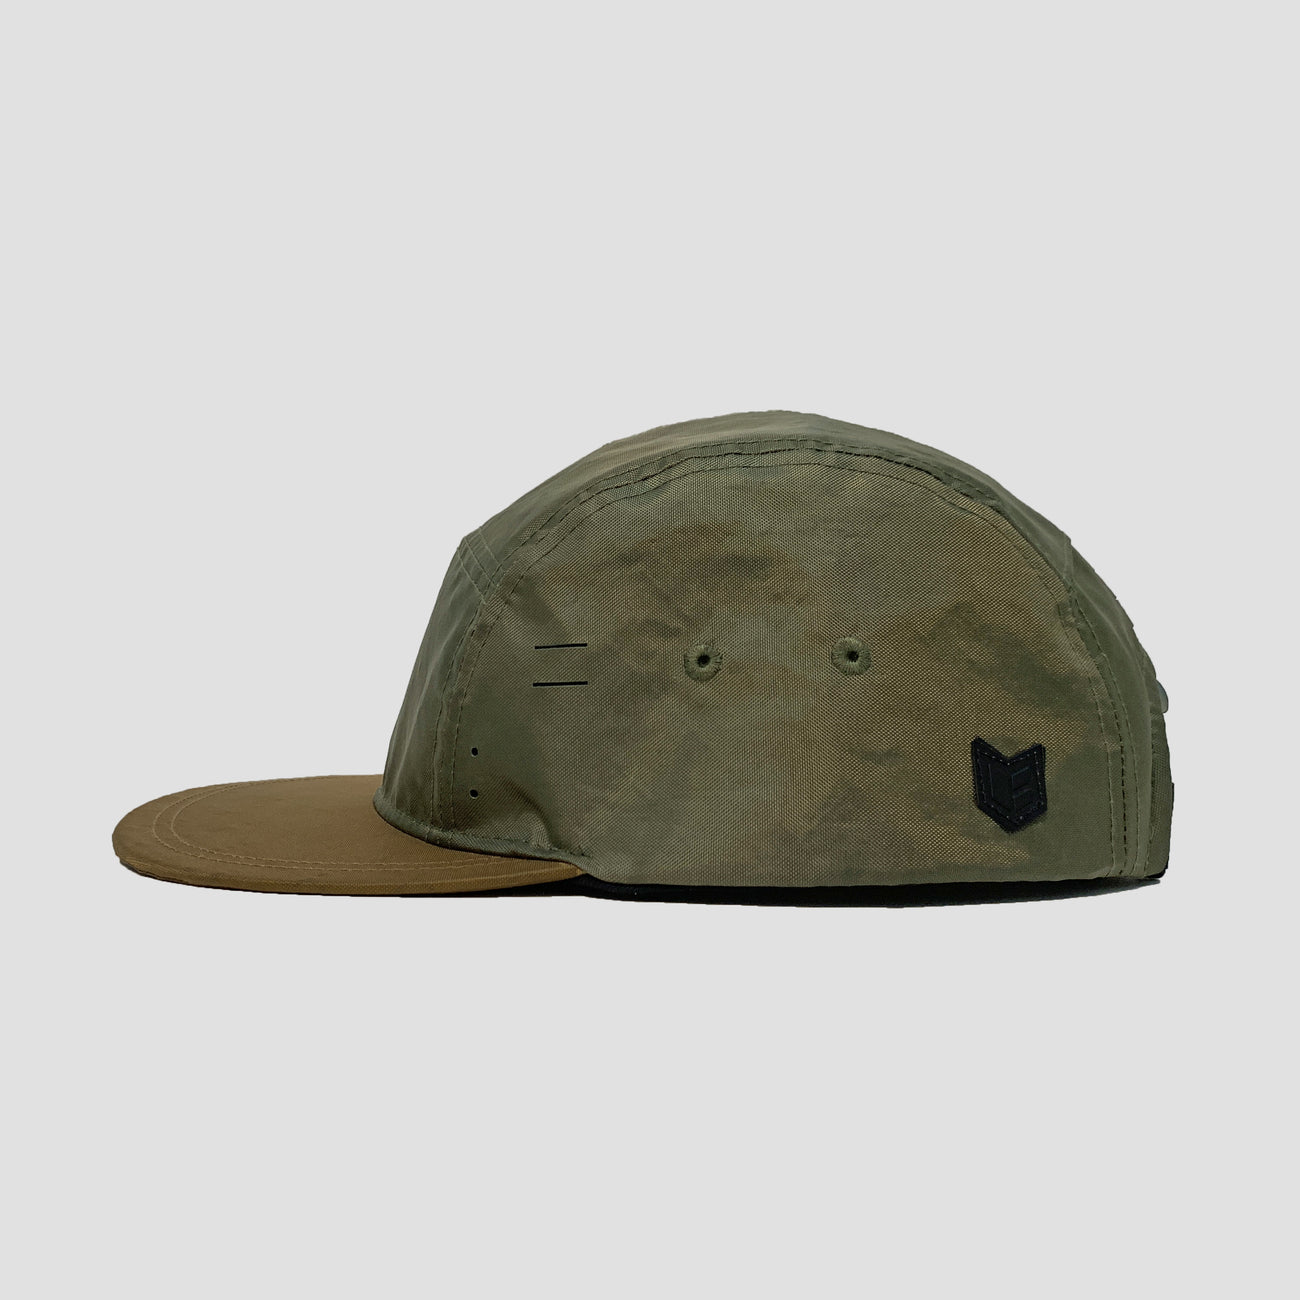 BASI [X] CAMPER HAT